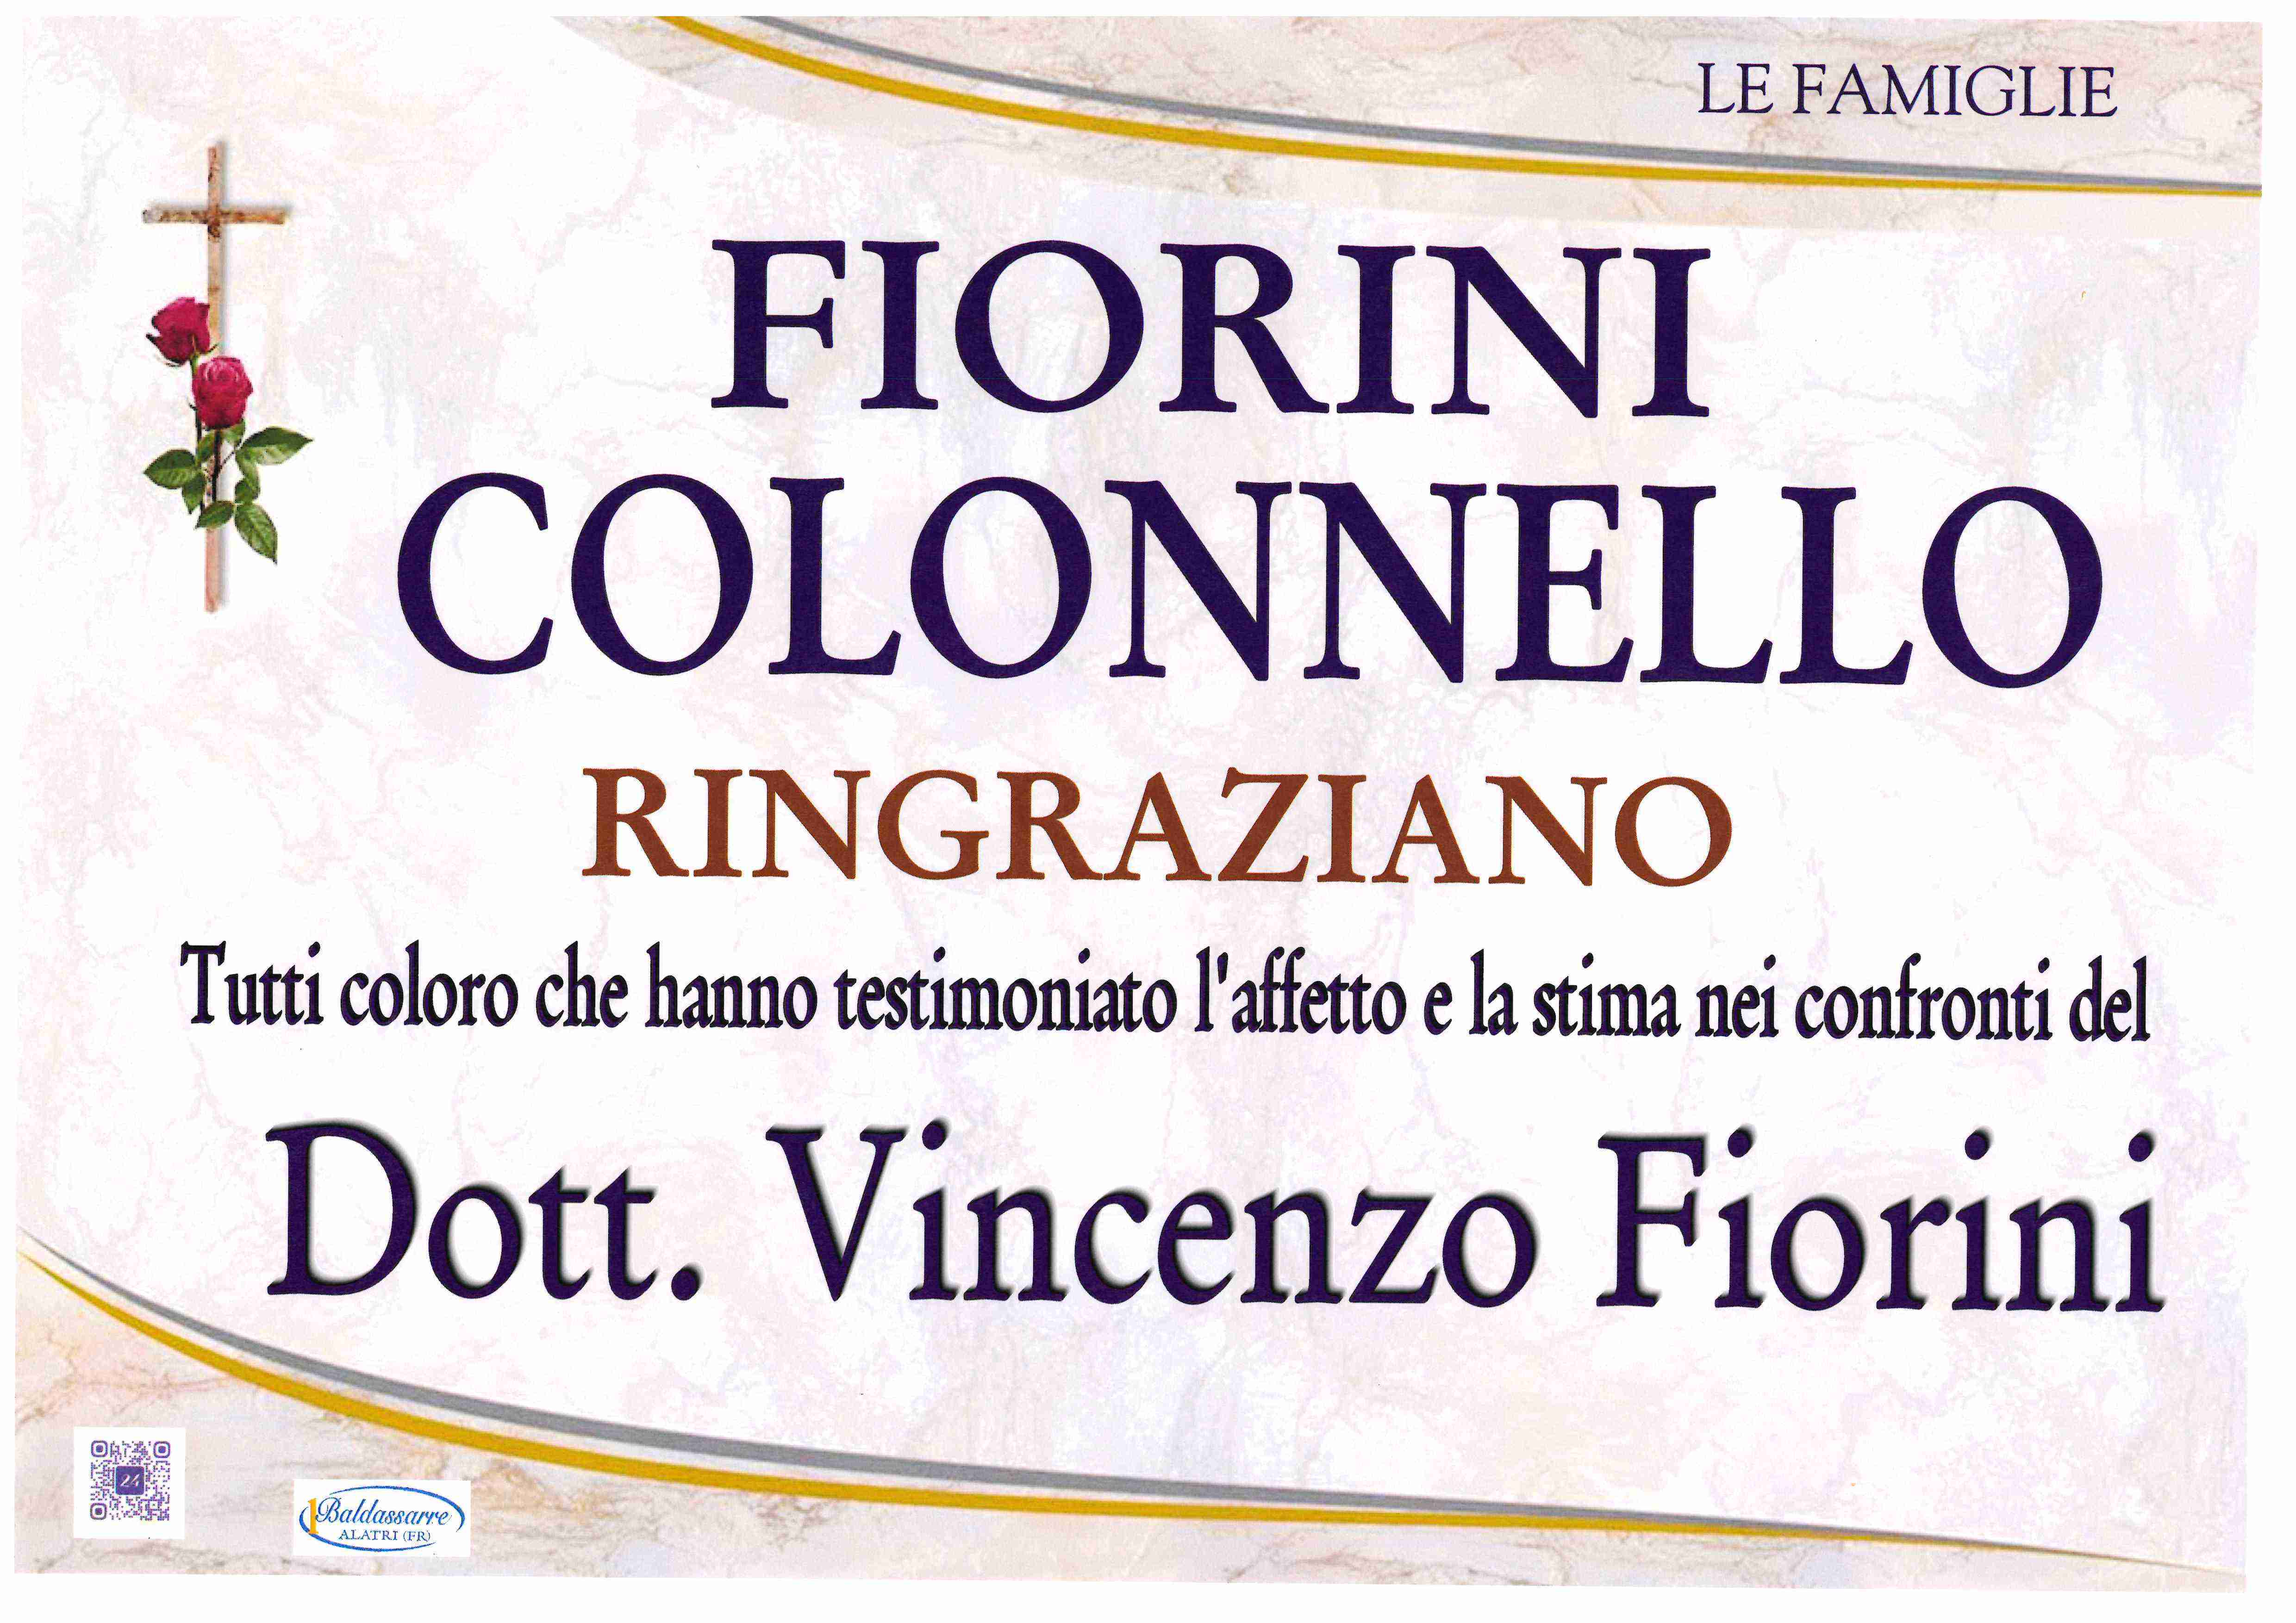 Vincenzo Fiorini